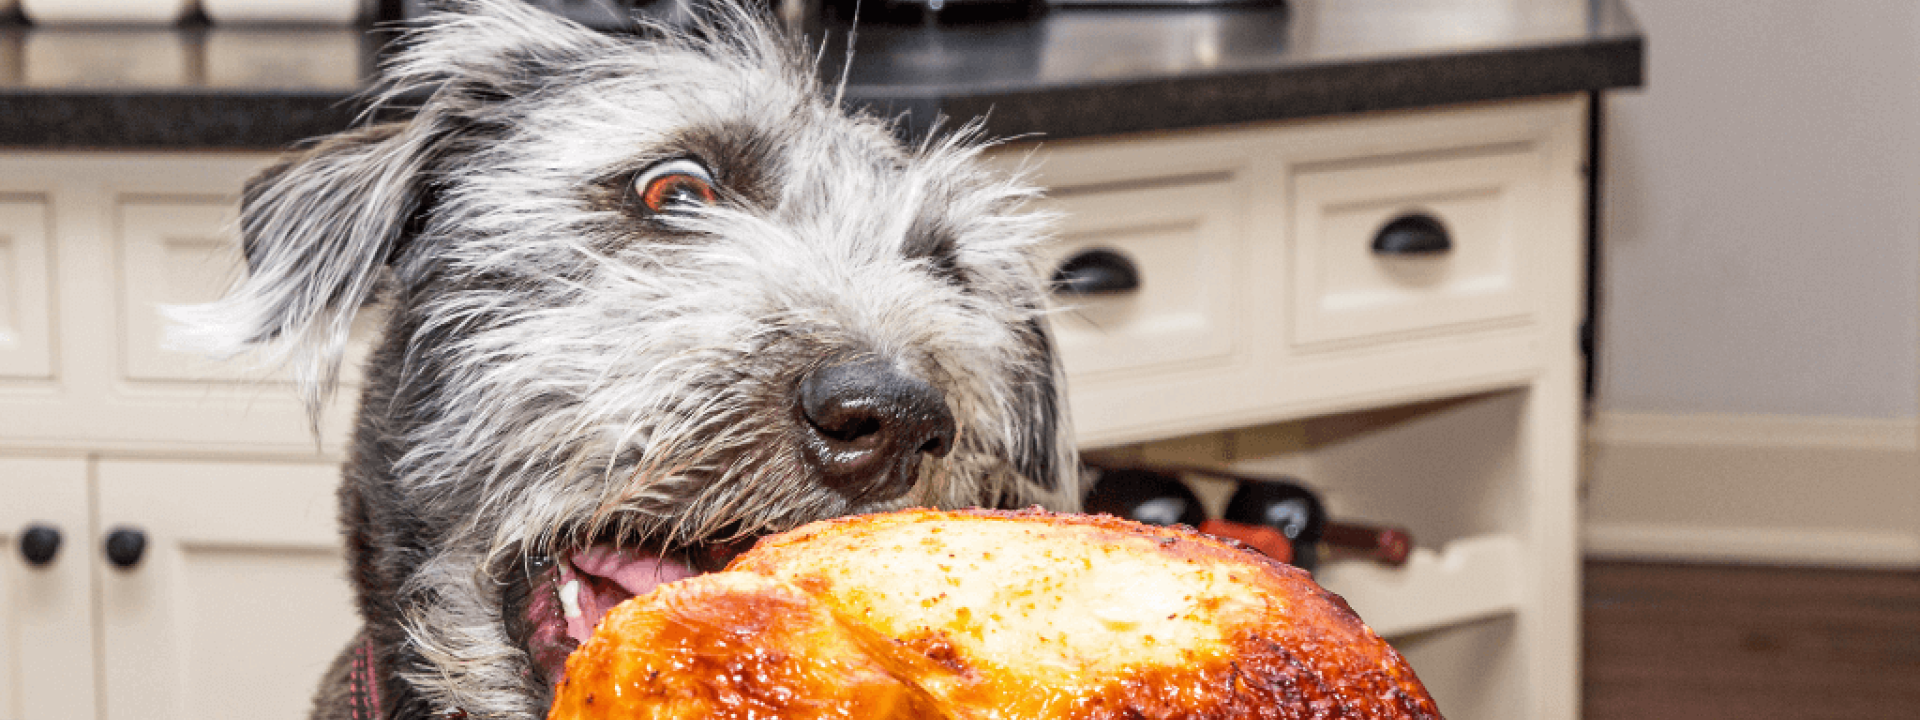 Thanksgiving pet hazards